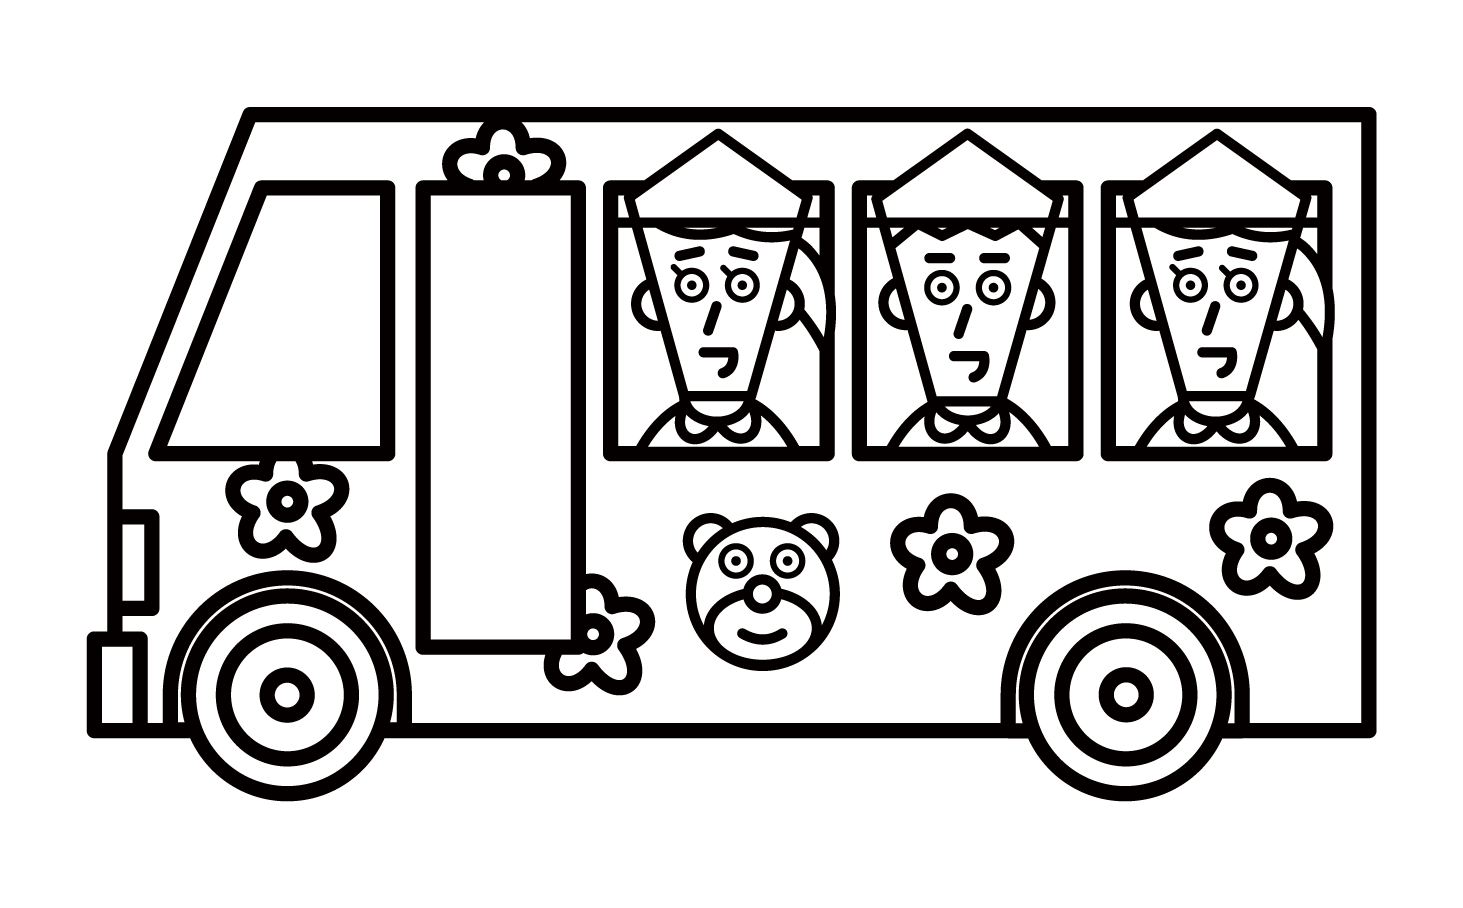 乘坐接送巴士的學齡前兒童和學齡前兒童的插圖